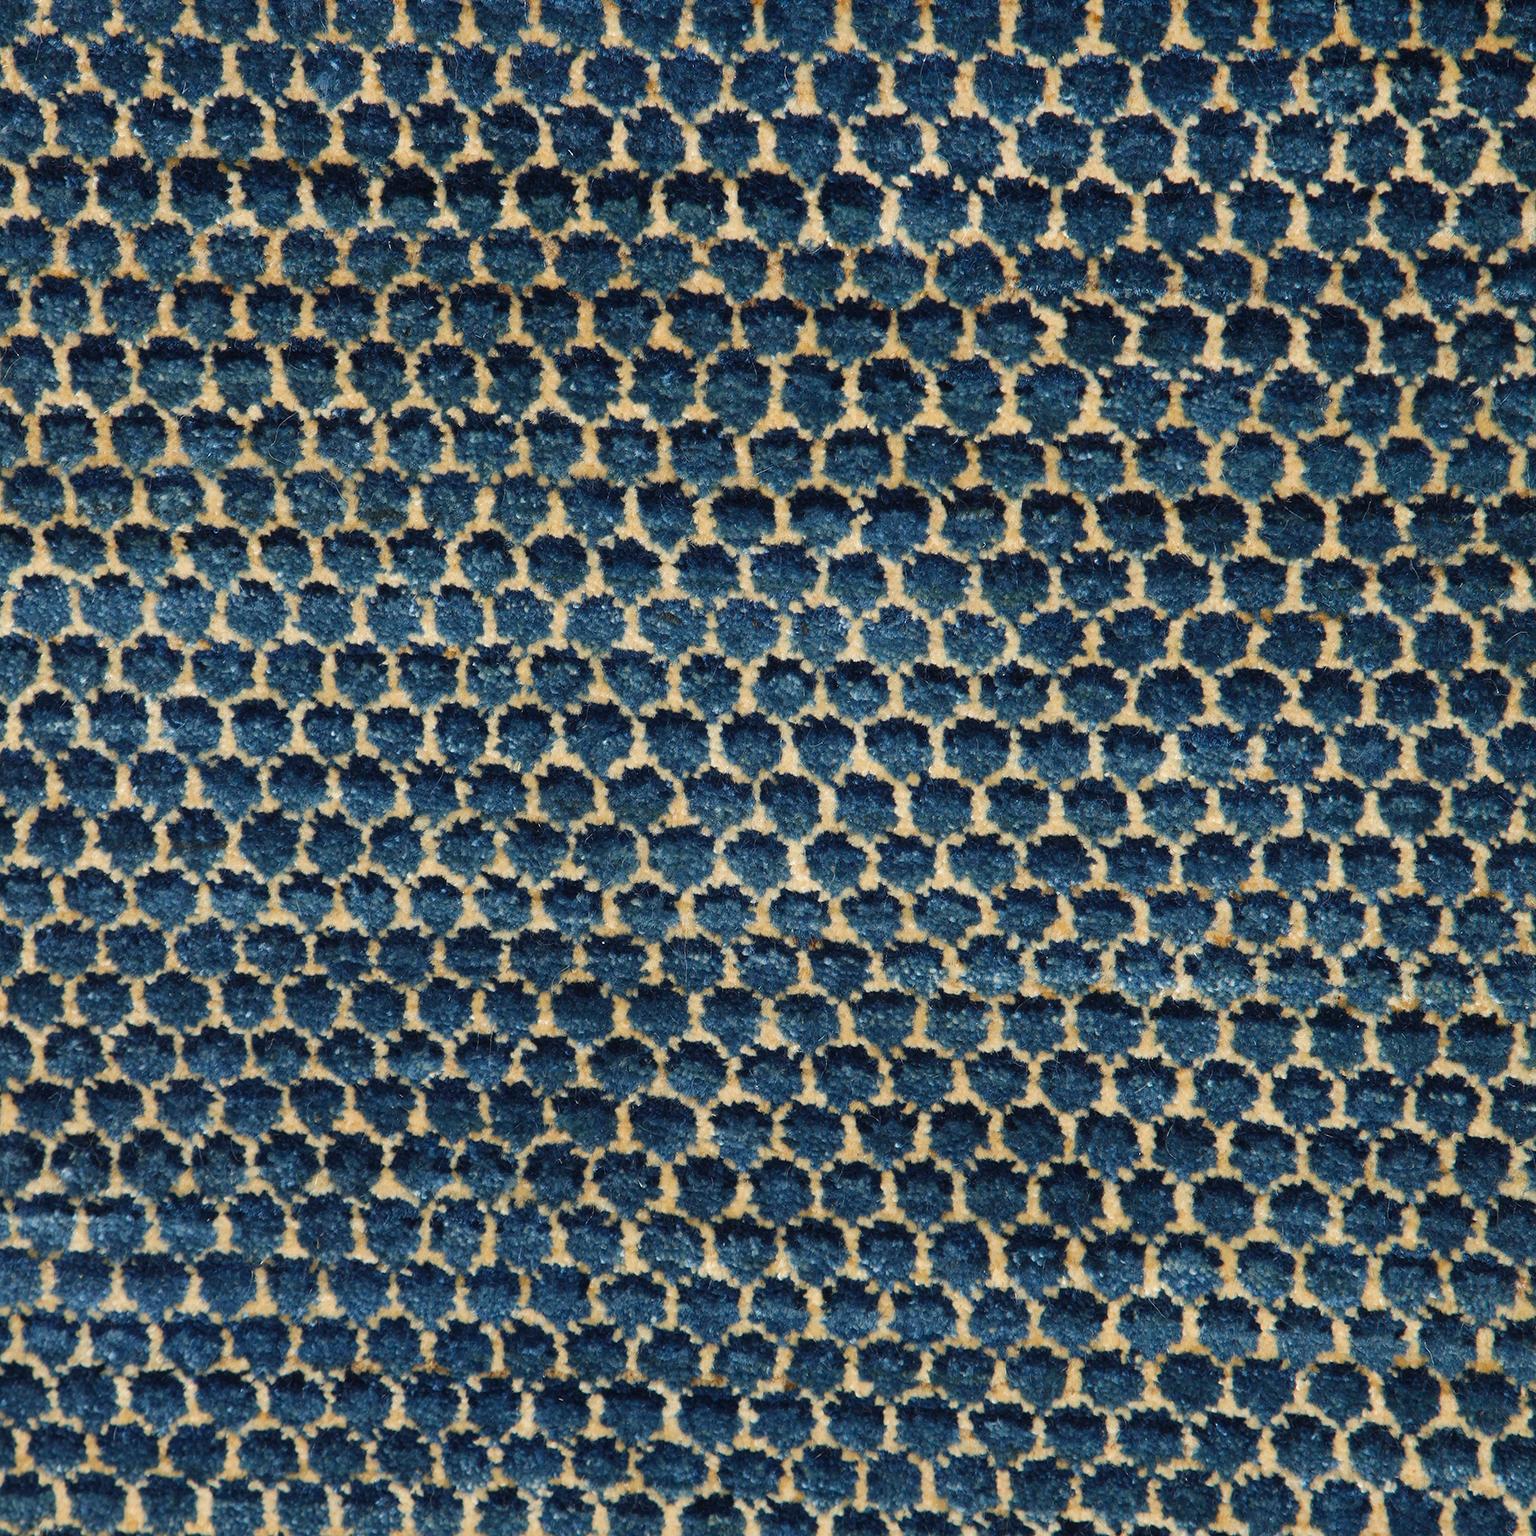 Aligné dans un motif répétitif, Droplet présente un motif d'écailles de poisson en treillis. Comme tous les tapis Orley Shabahang, cette pièce utilise un tissage noué à la main et des teintures végétales biologiques pour ses tons bleus. Sa